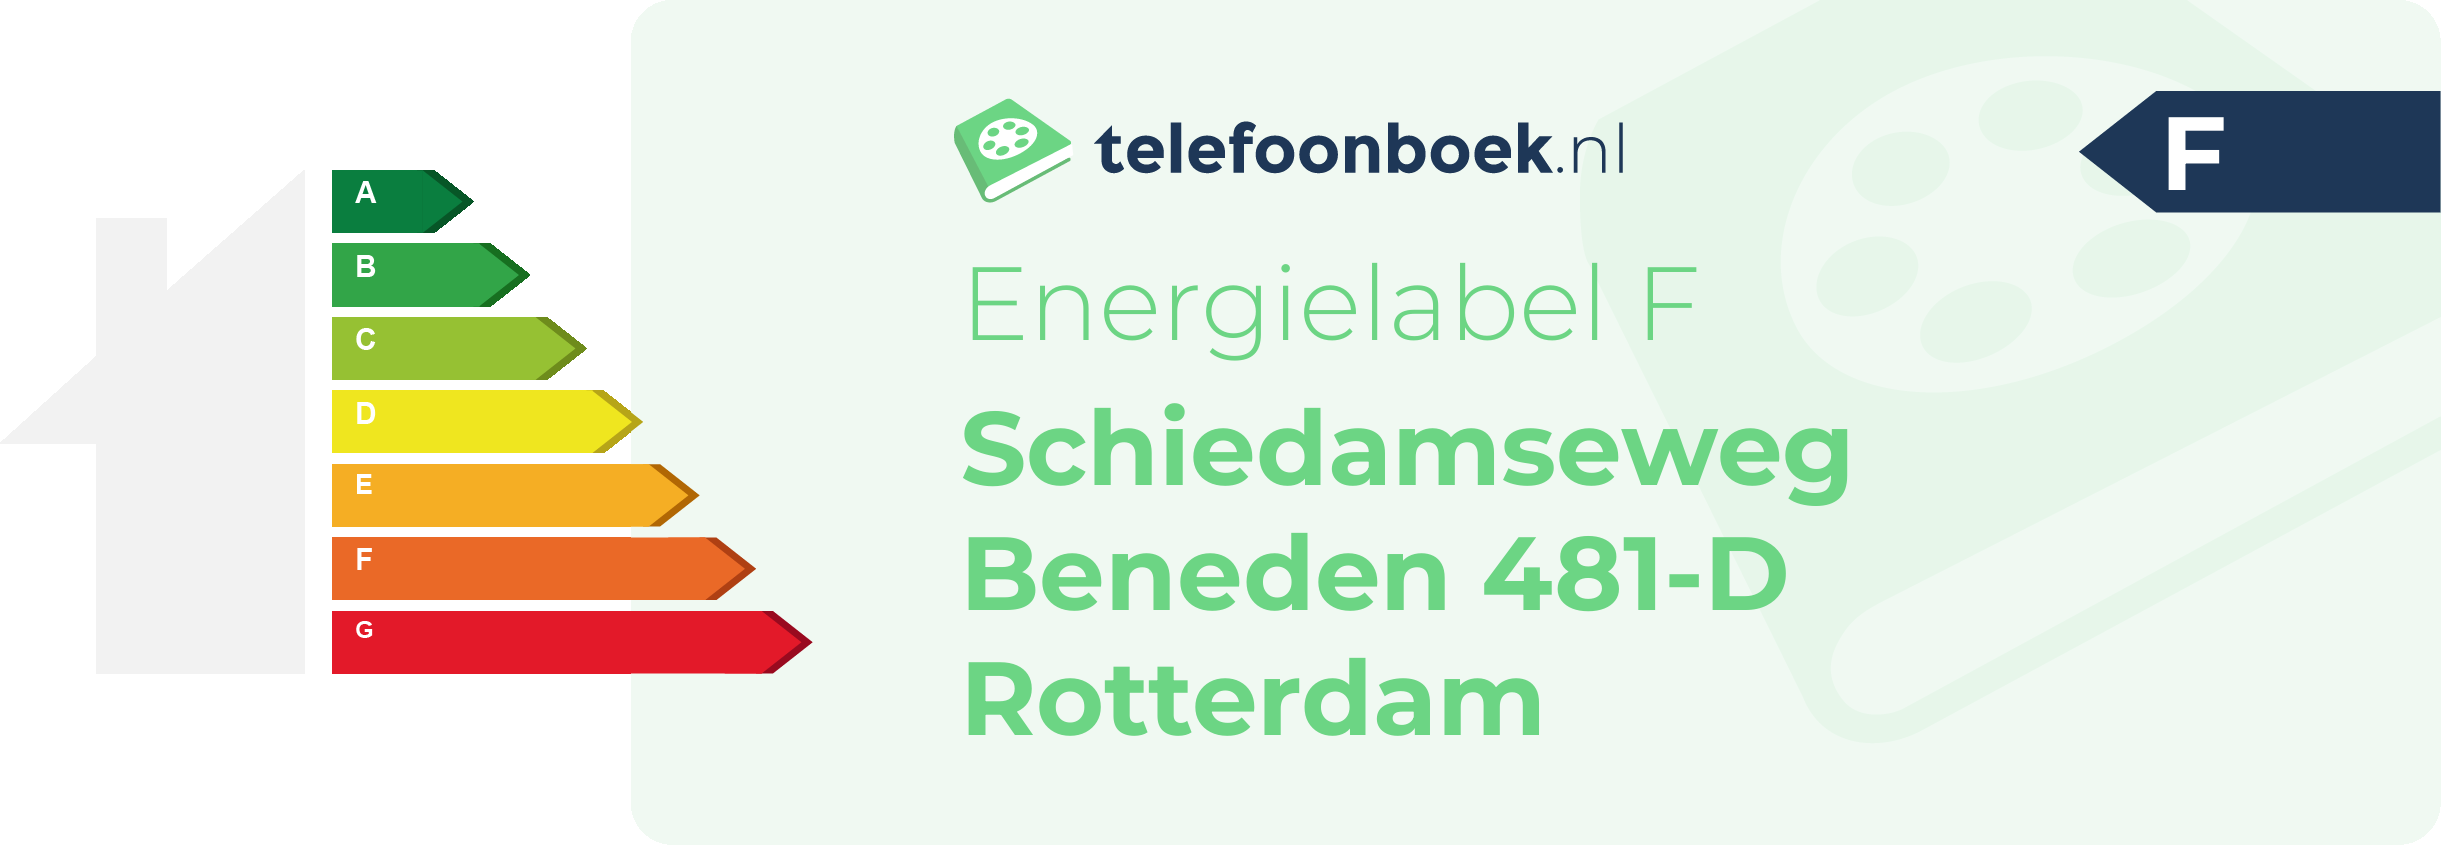 Energielabel Schiedamseweg Beneden 481-D Rotterdam